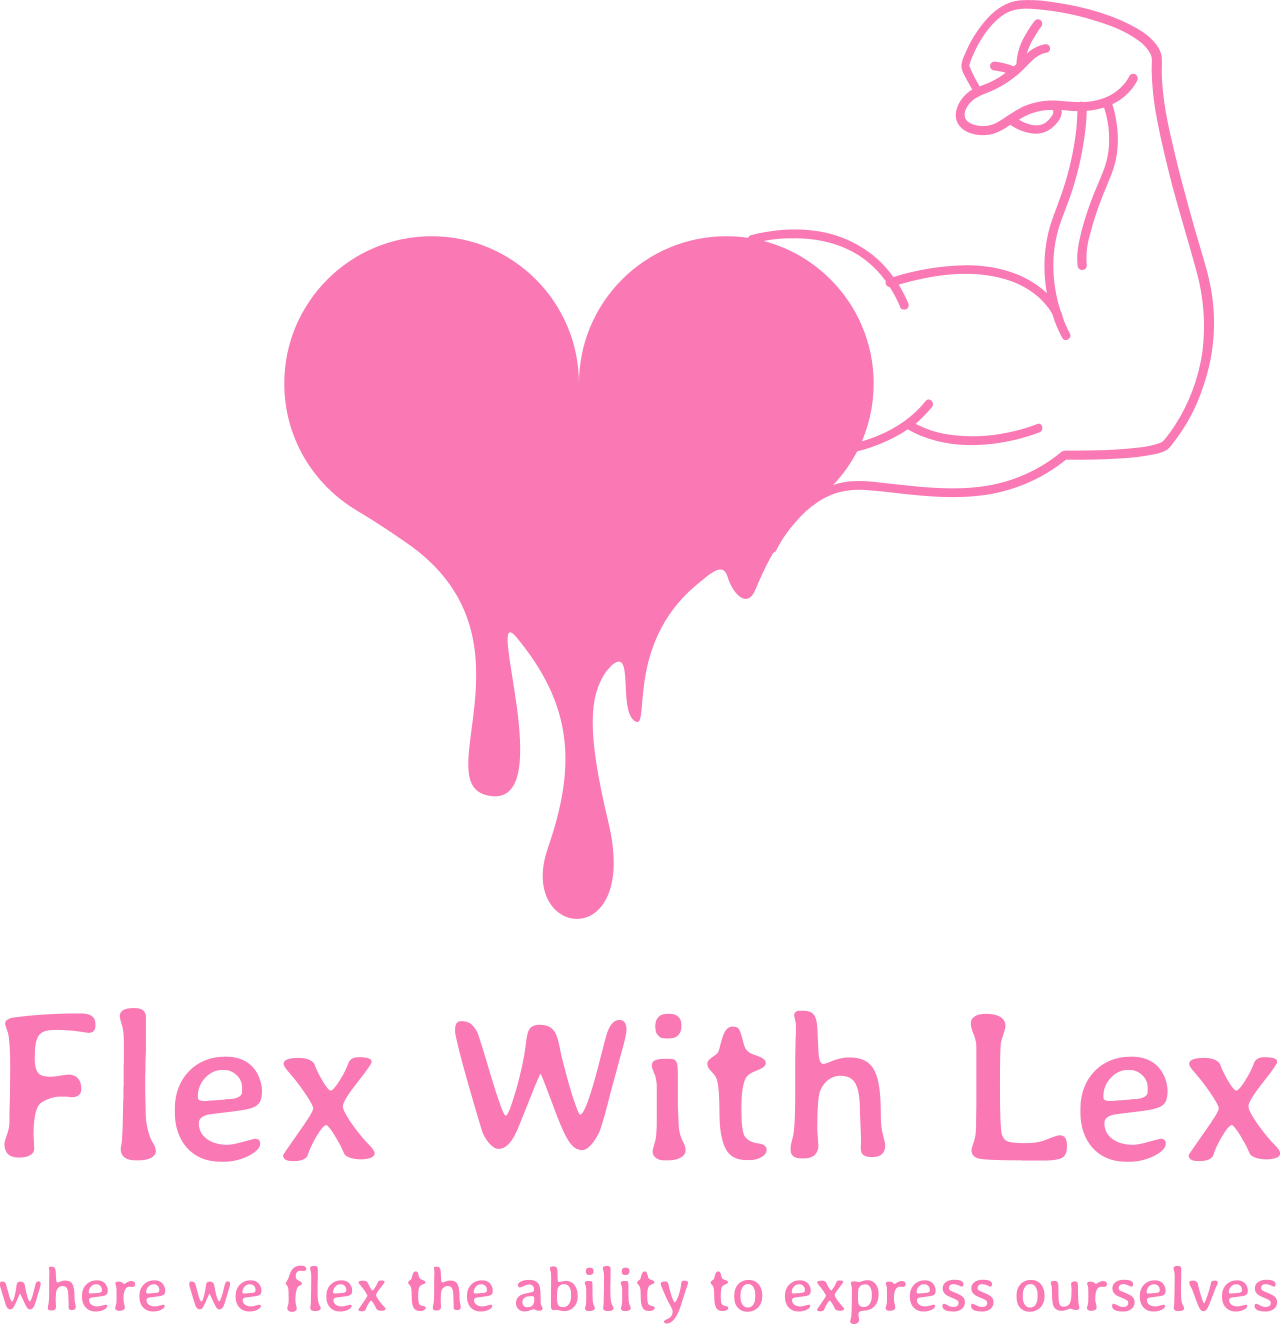 Flex With Lex's web page